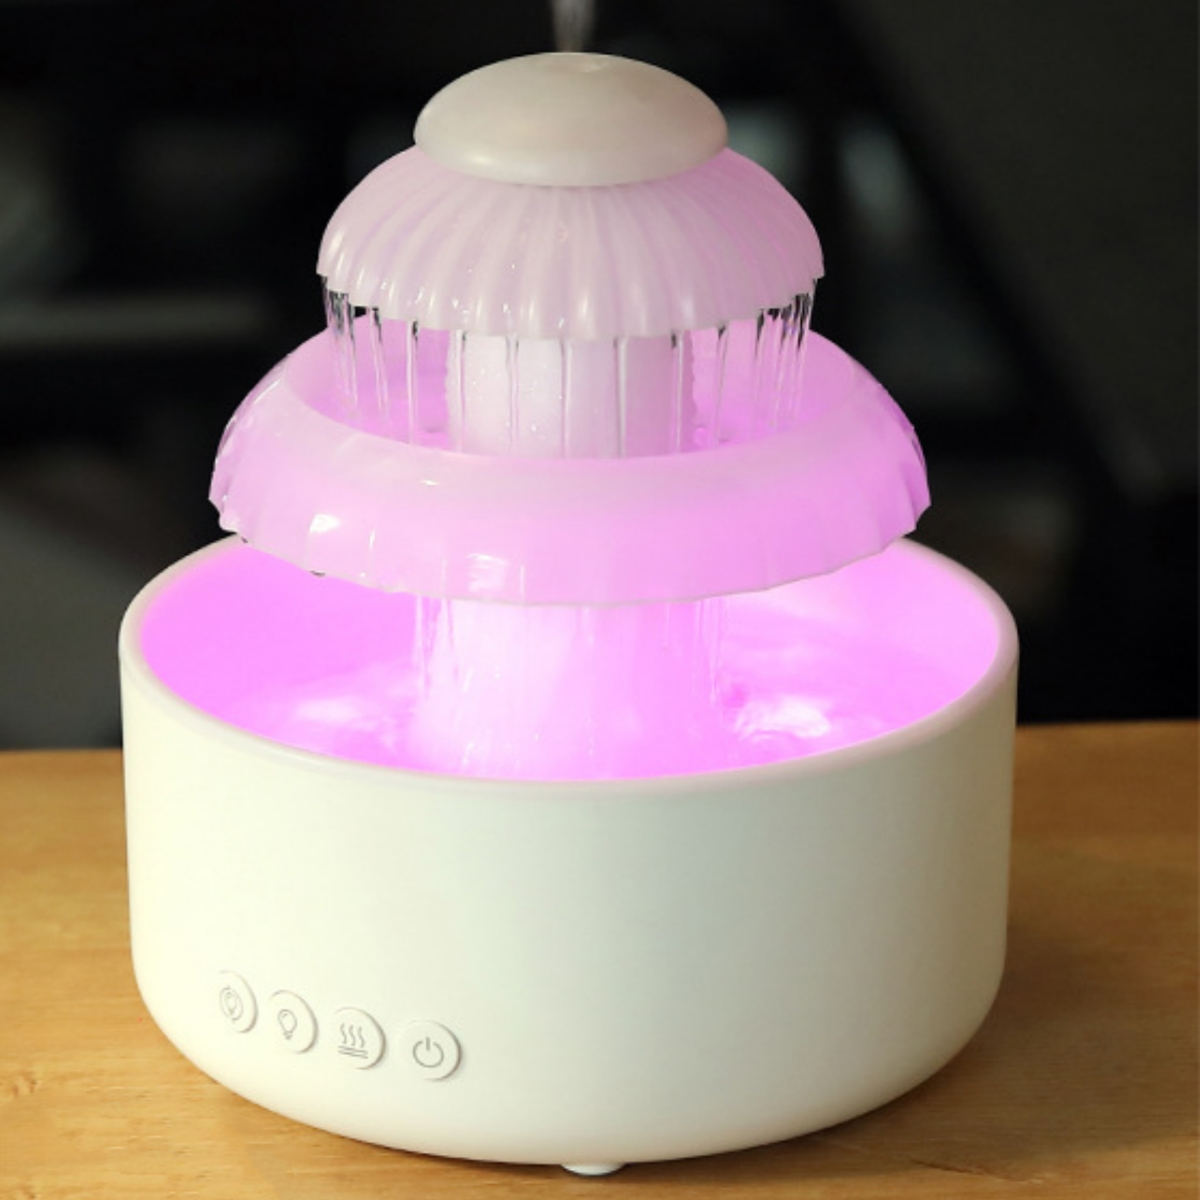 Luftbefeuchter m²) LED-Atmosphärenlicht Aromatherapie-Spray, Luftbefeuchter (Raumgröße: 30 Wassertropfen, USB, Buntes SYNTEK Weiß